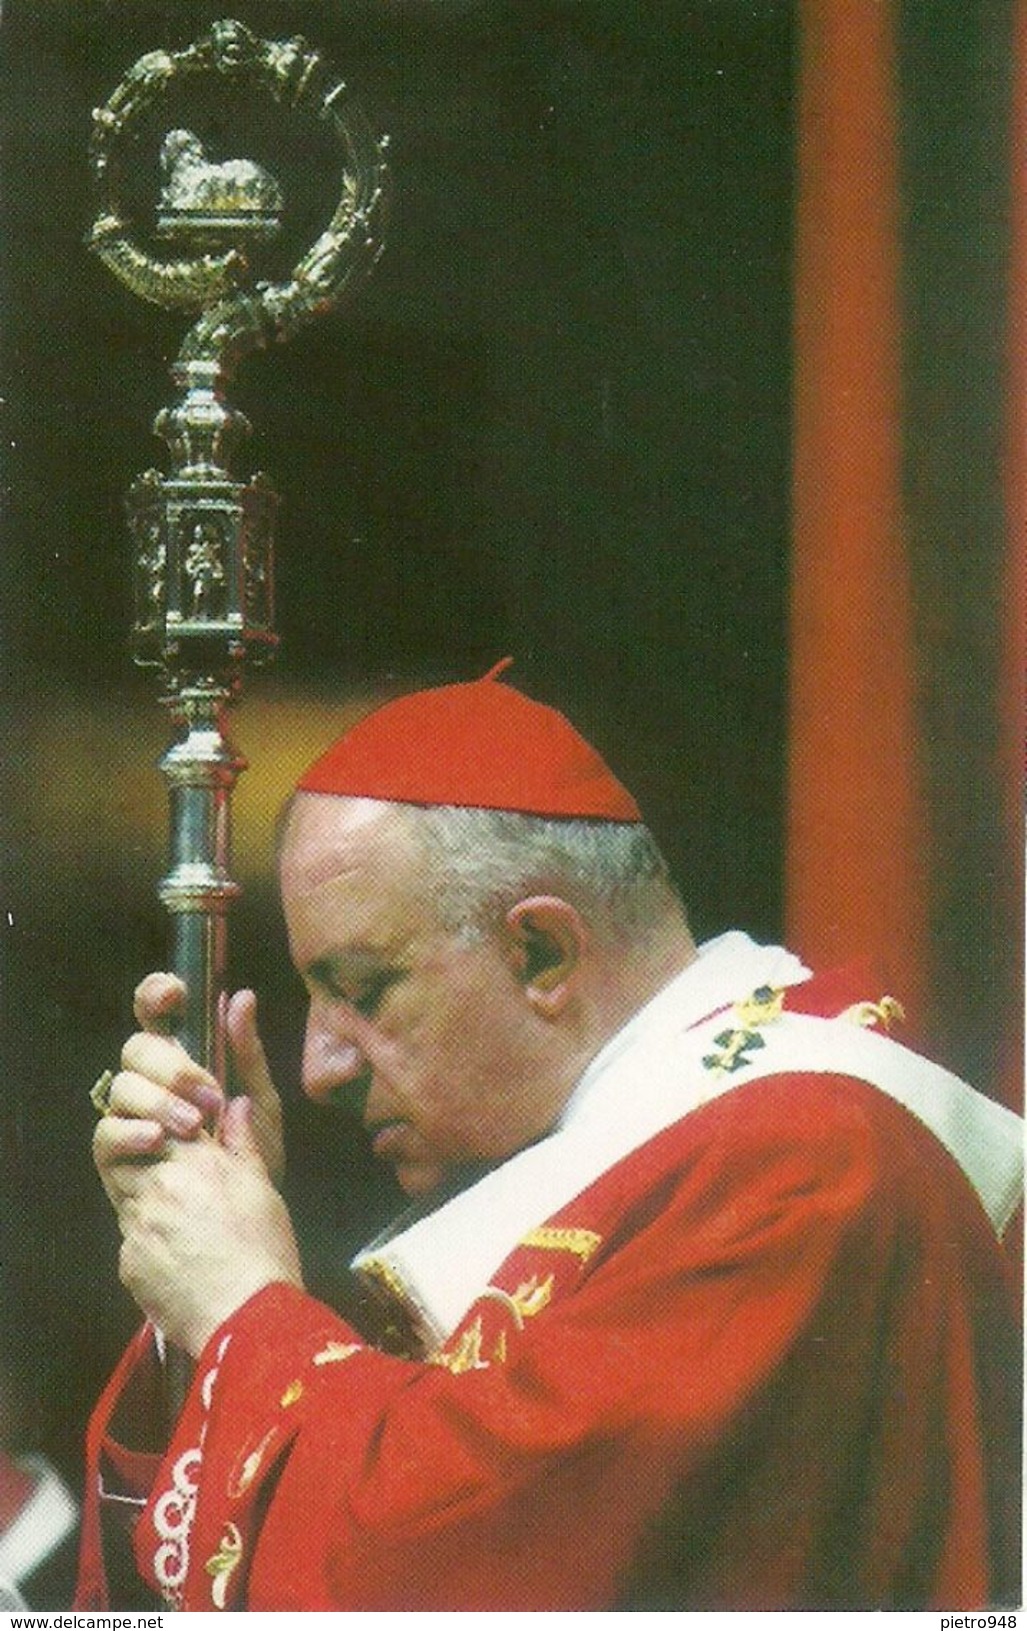 Cardinale Dionigi Tettamanzi, Nel 50° Di Ordinazione Presbiteriale, Duomo Di Milano 2 Giugno 2007 - Devotion Images